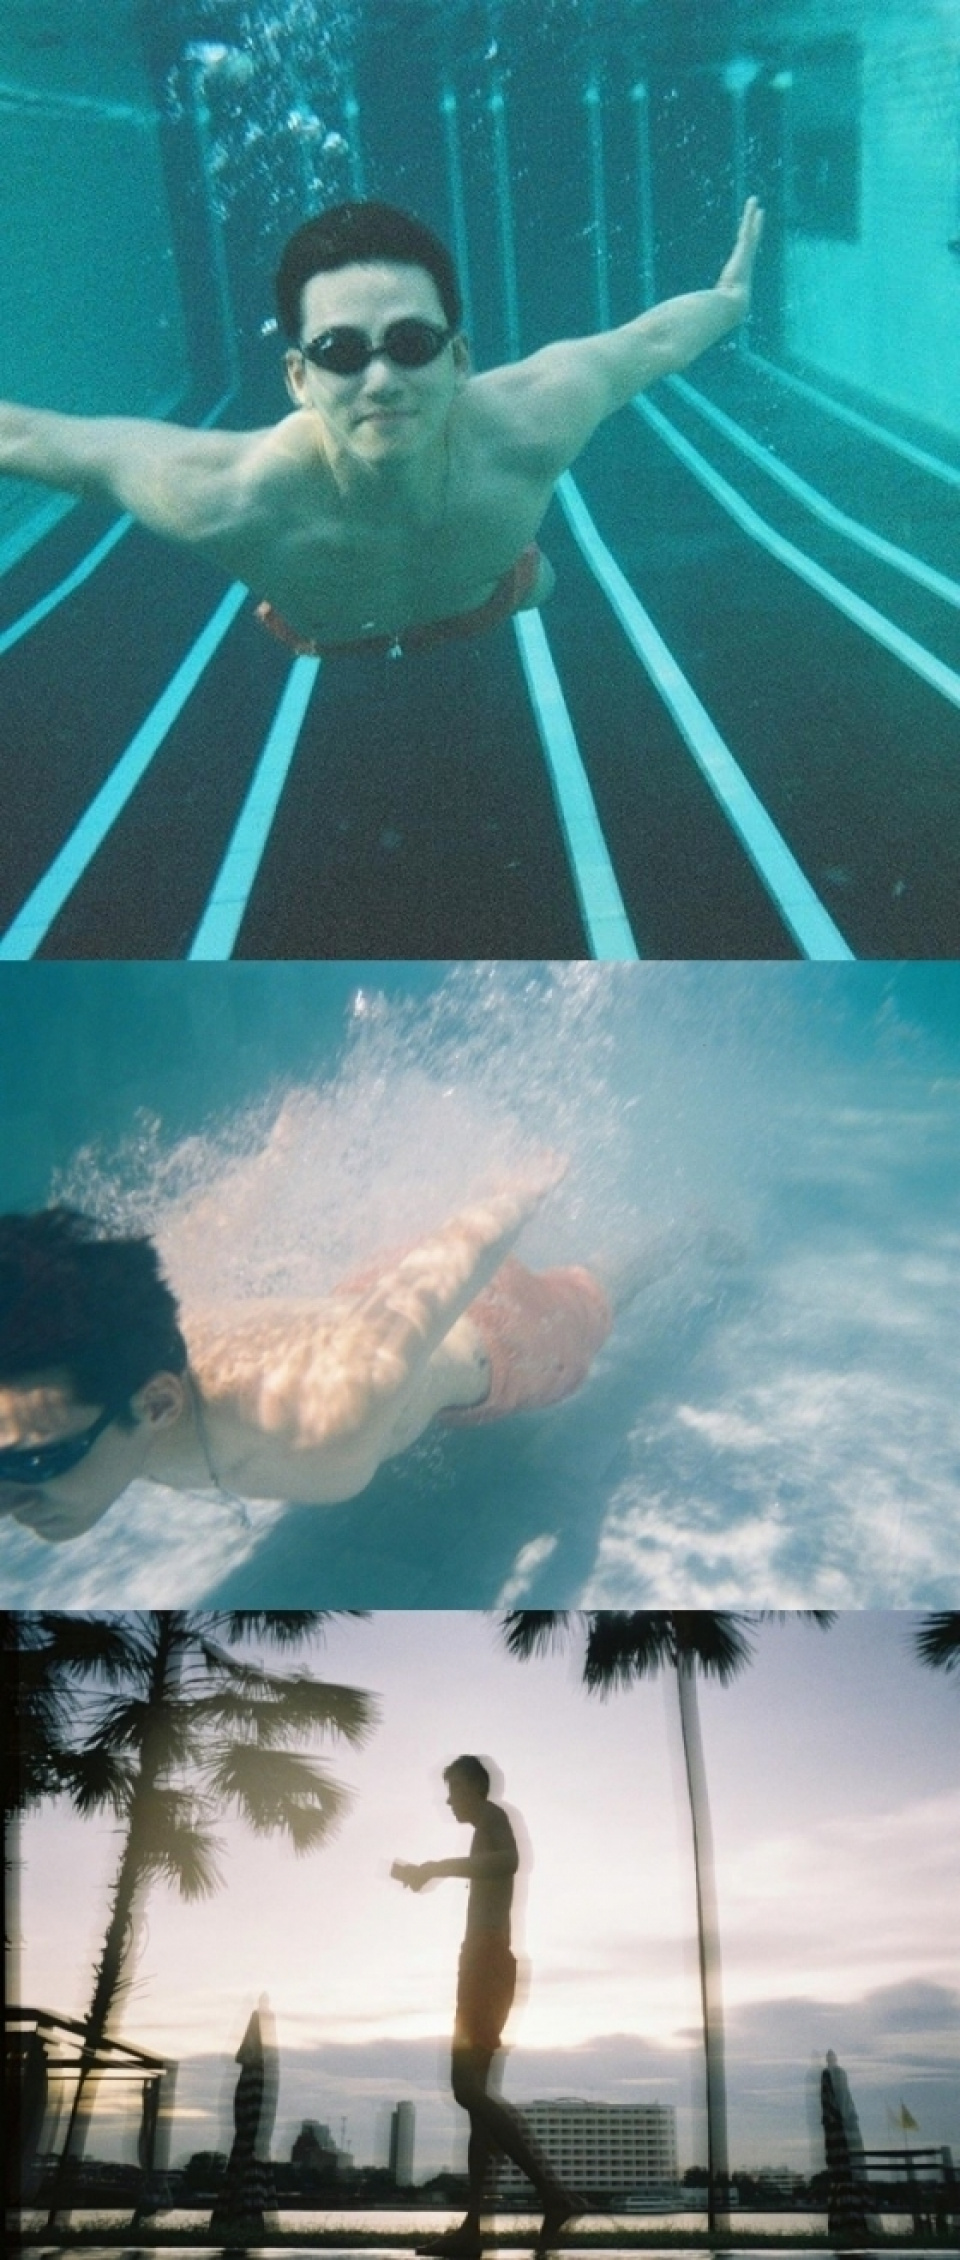 チ・チャンウク、水泳で見せた筋肉質の腕「昨年の今頃」